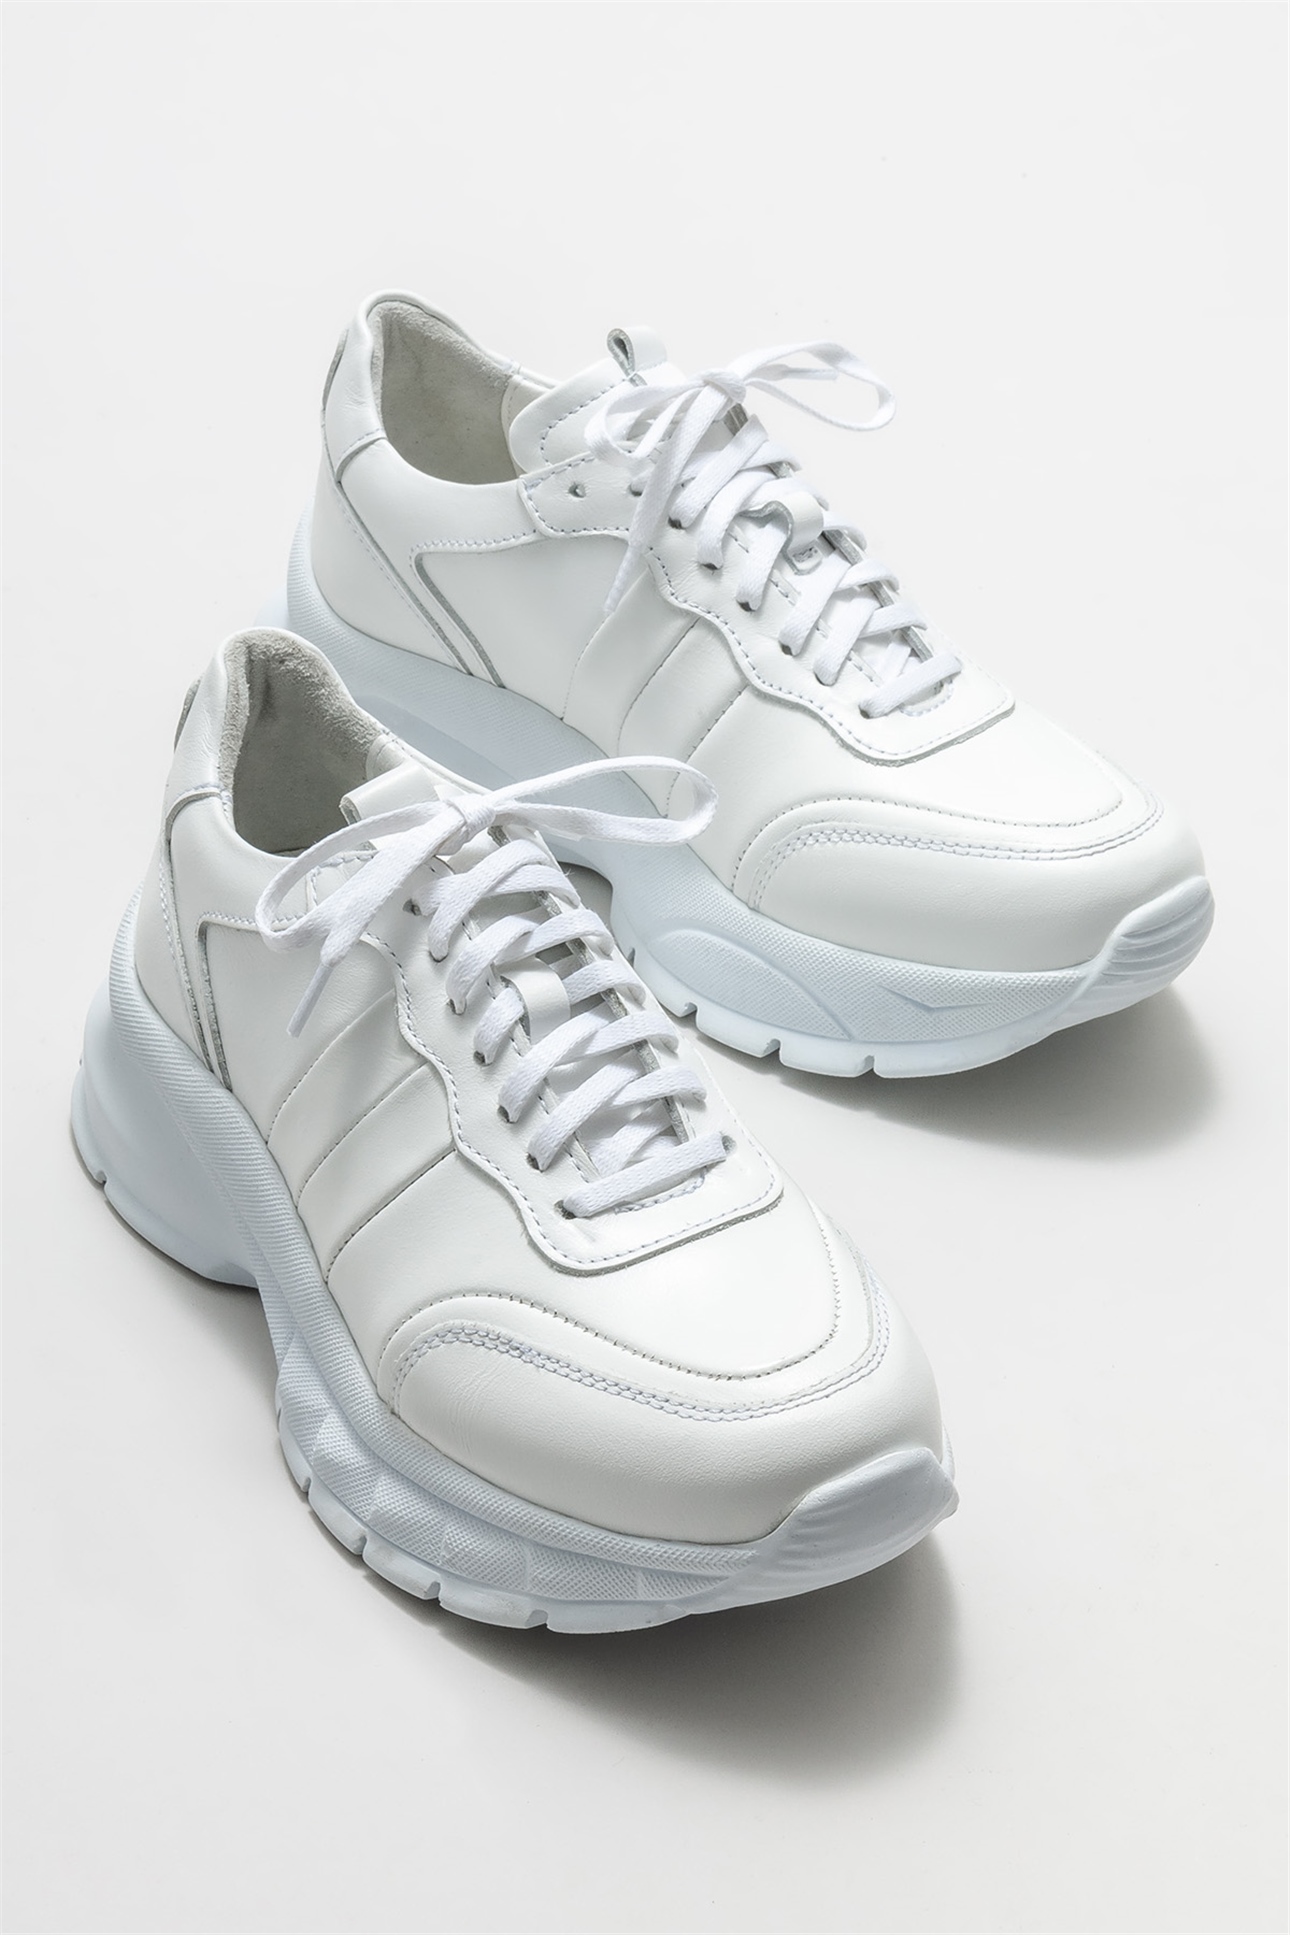 Beyaz Deri Kadın Spor Ayakkabı Satın Al! WATTS-1-02 Fiyatı | Elle Shoes